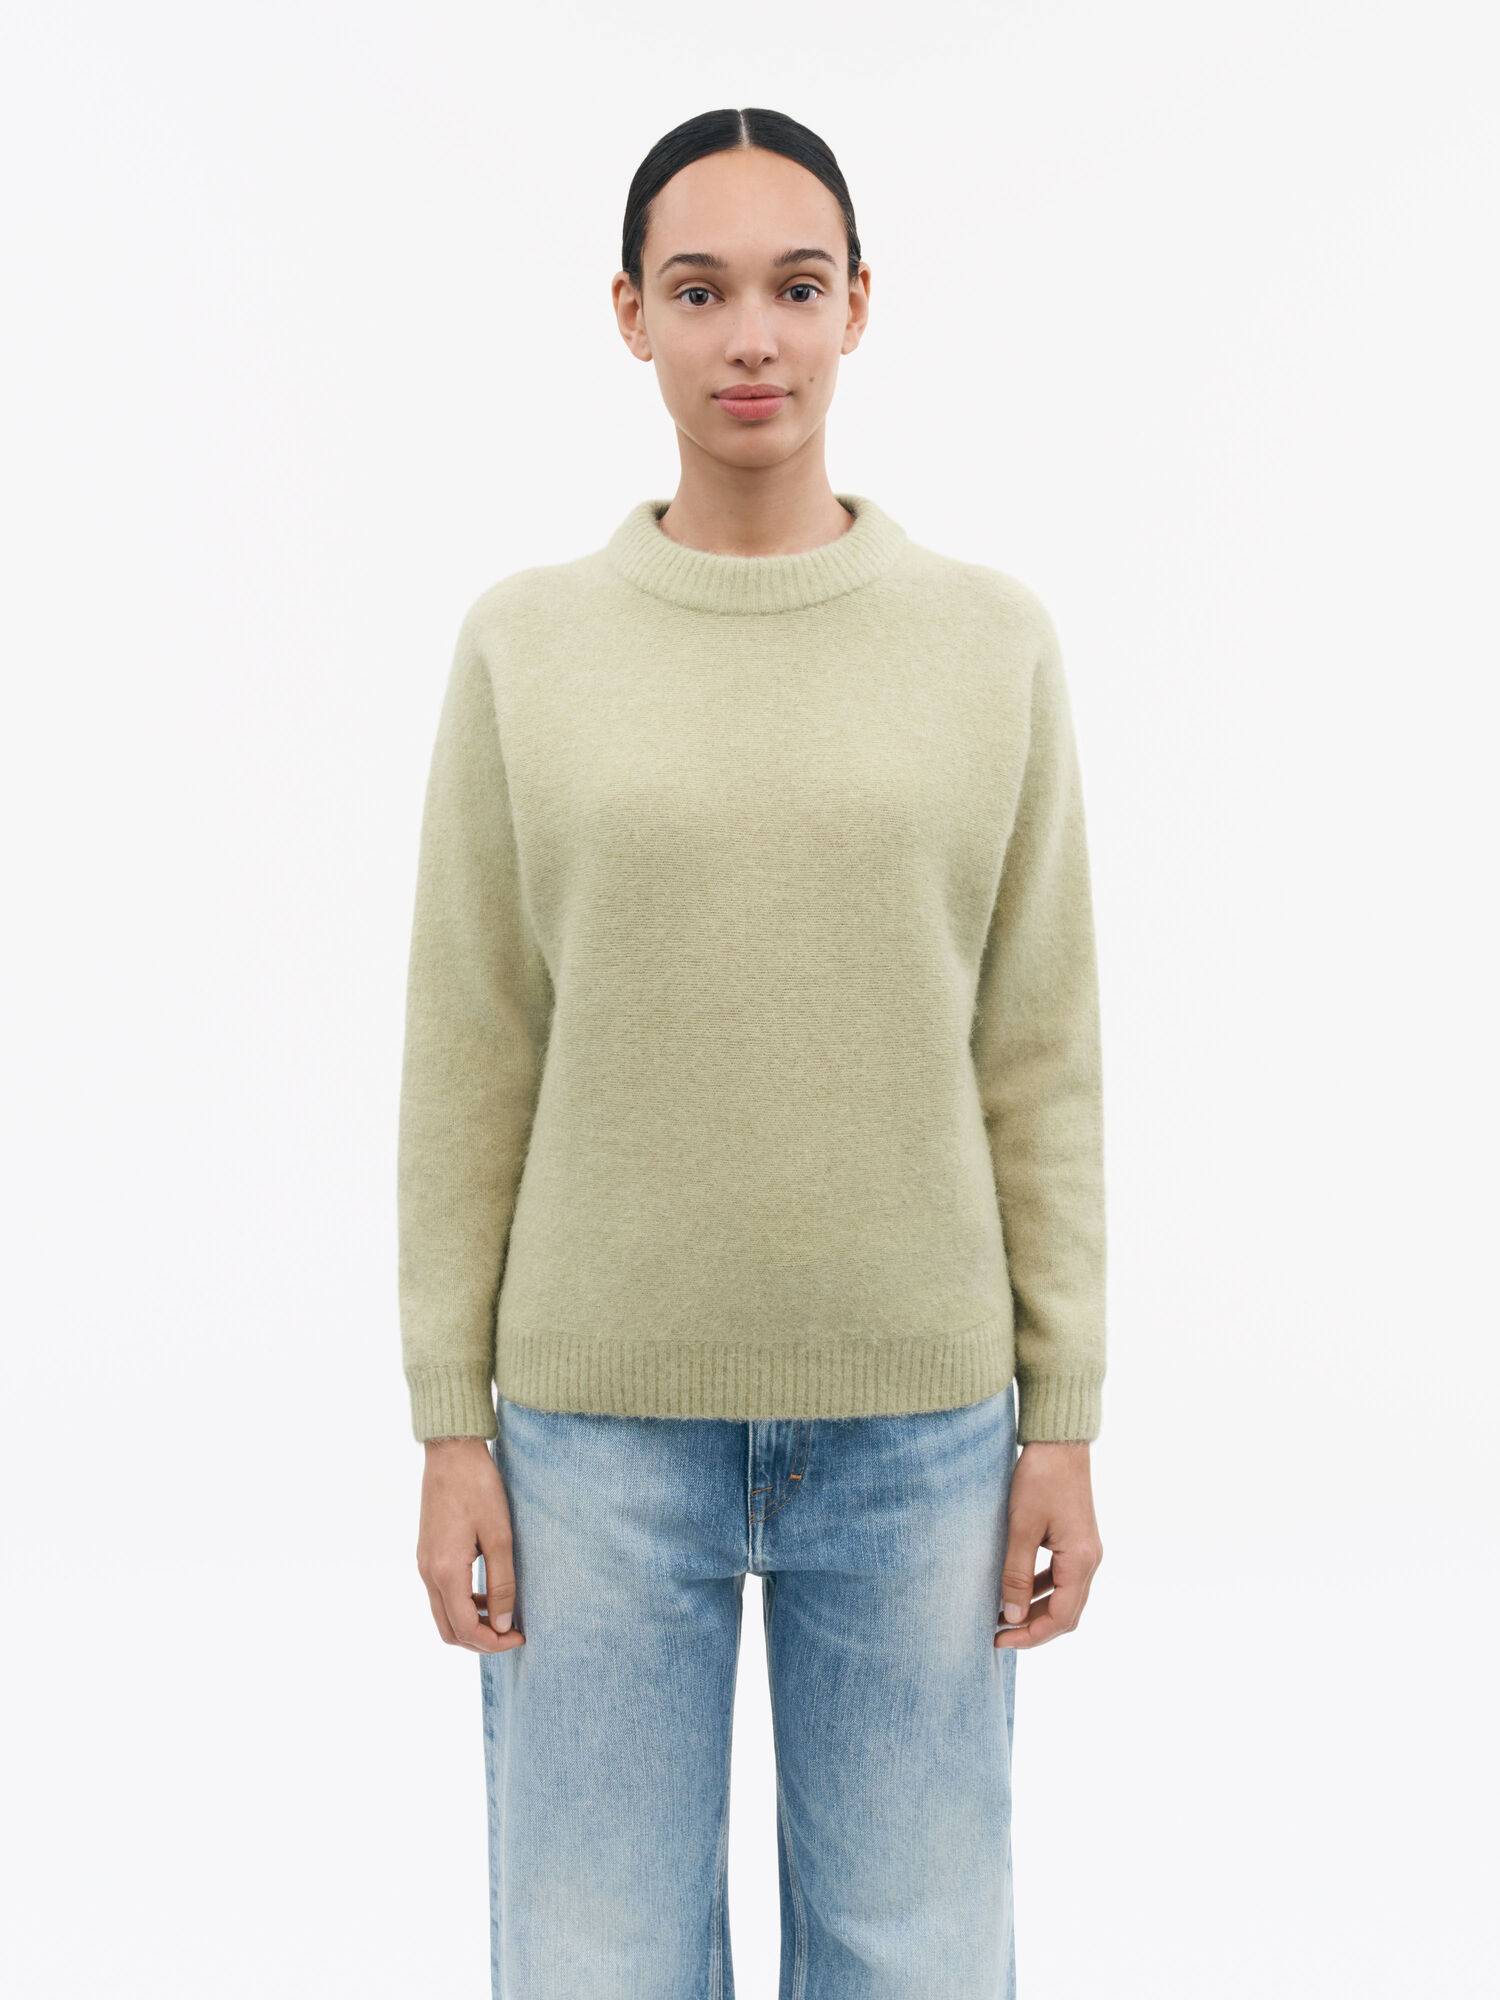 Gwynn Sweater